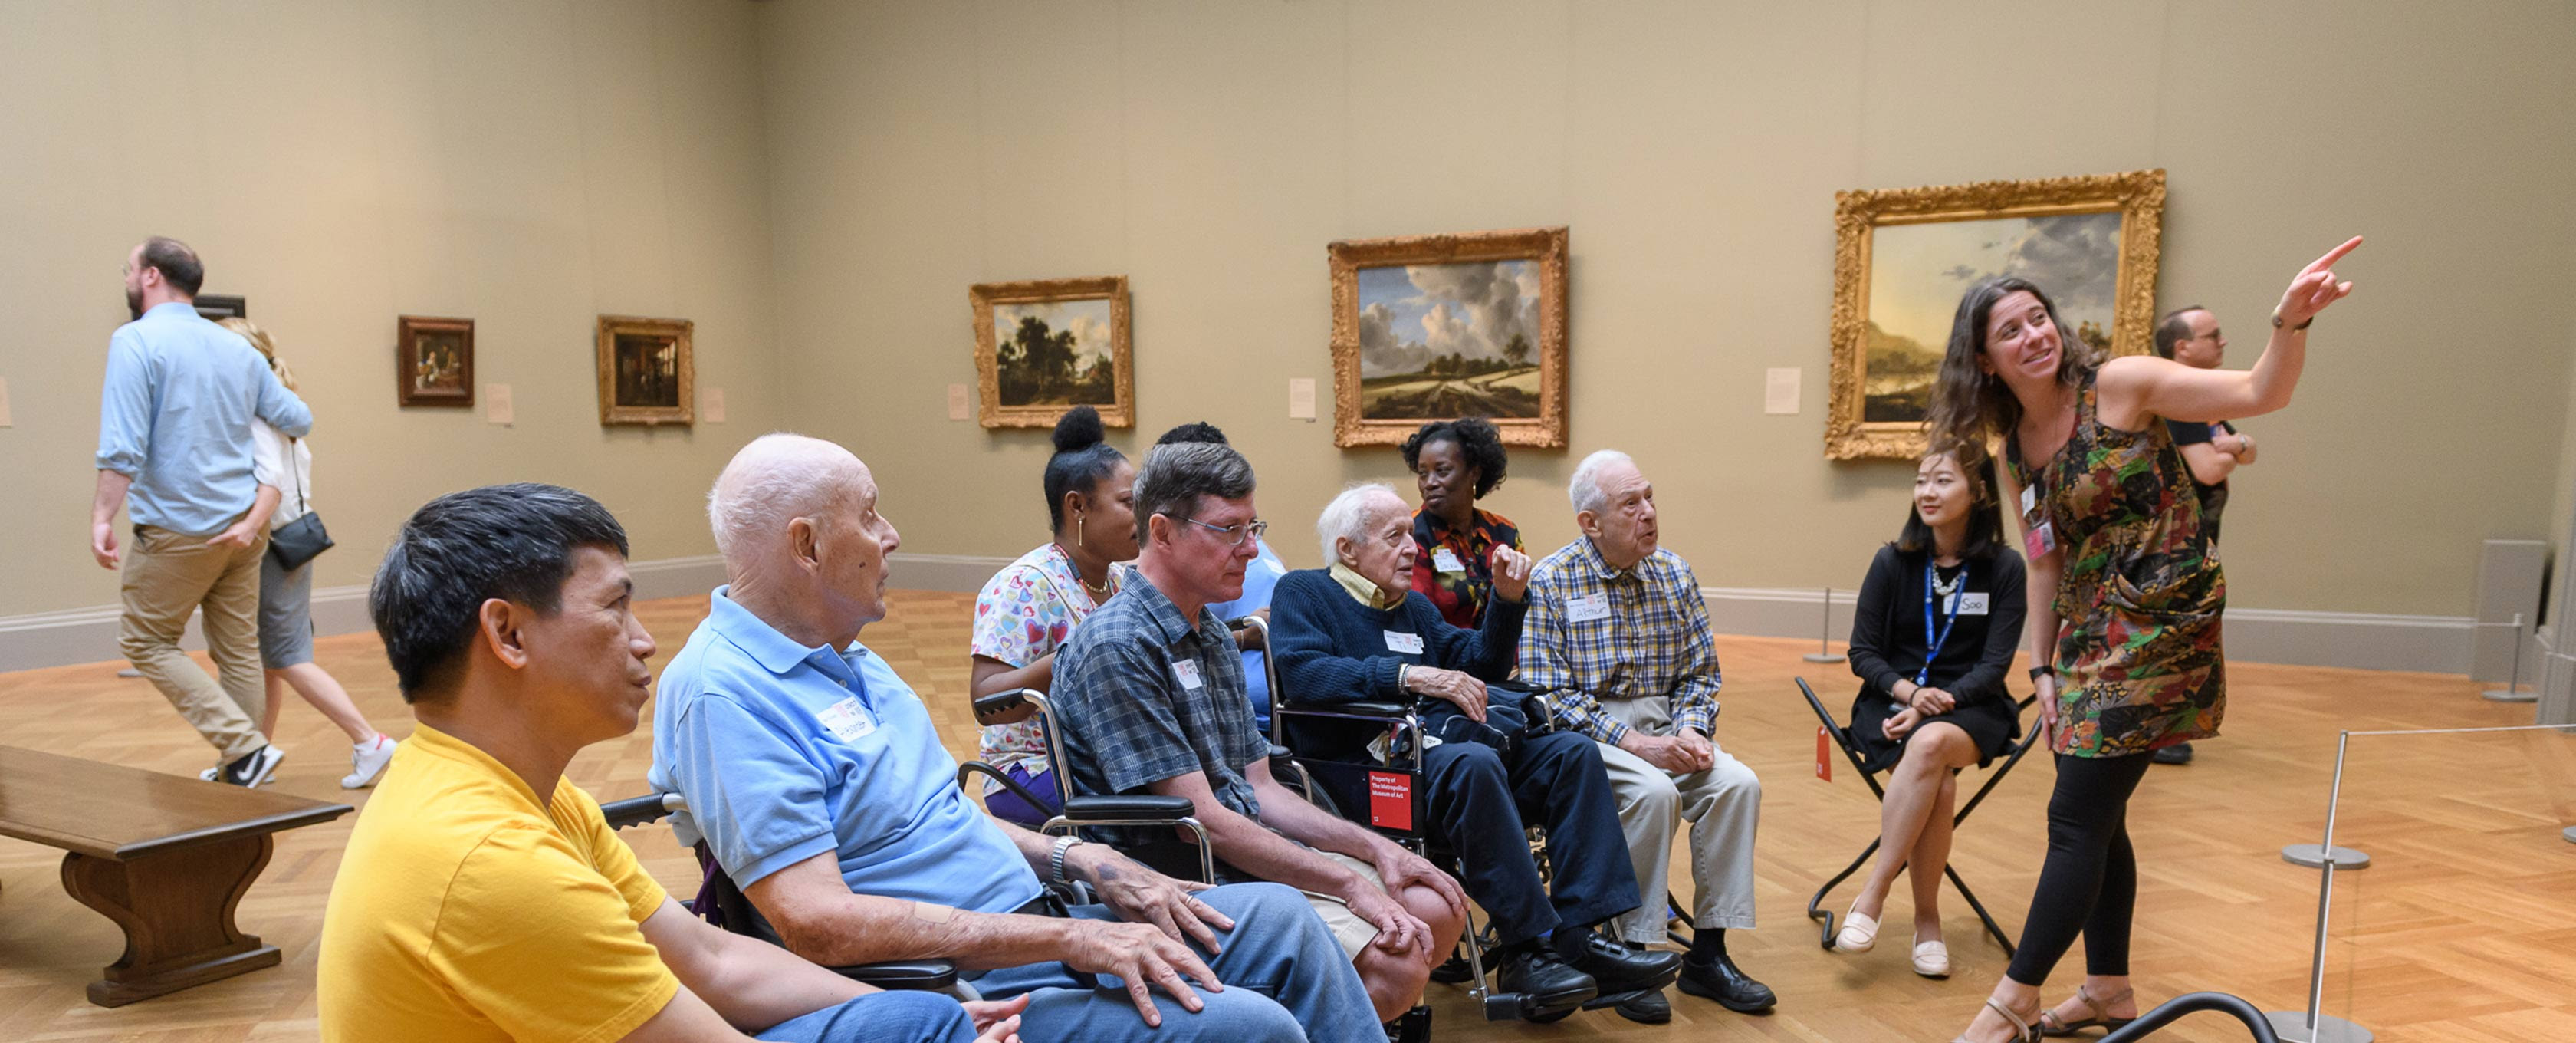 Um grupo está sentado em uma galeria ouvindo uma mulher falar sobre uma pintura.